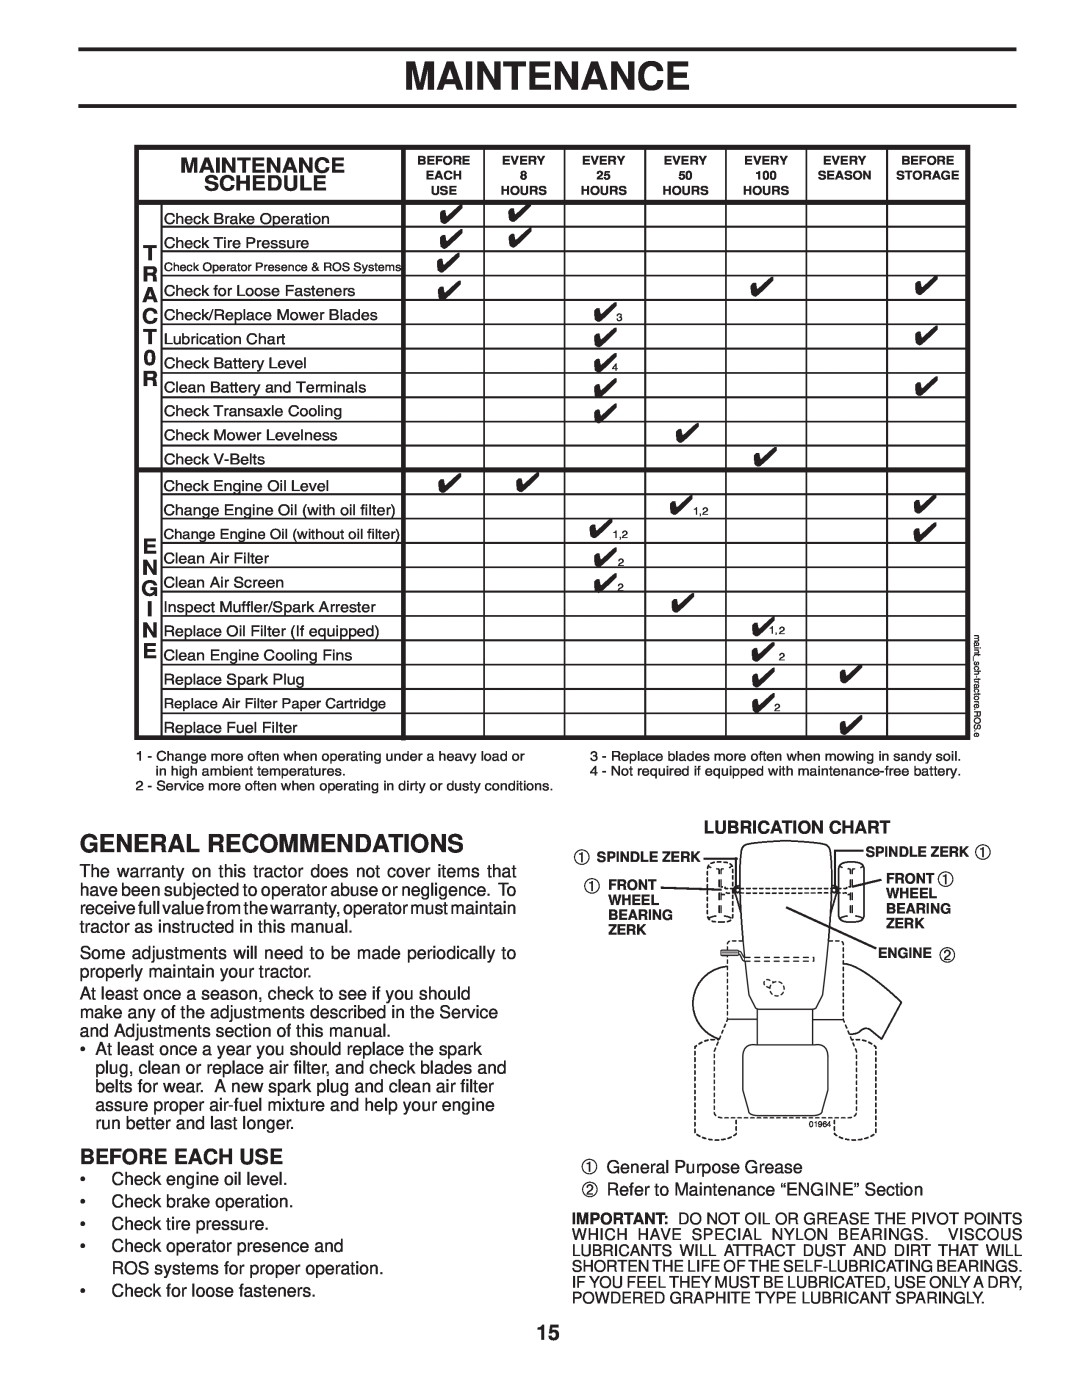 Poulan 96042004201, 411274 manual Maintenance, Lubrication Chart 